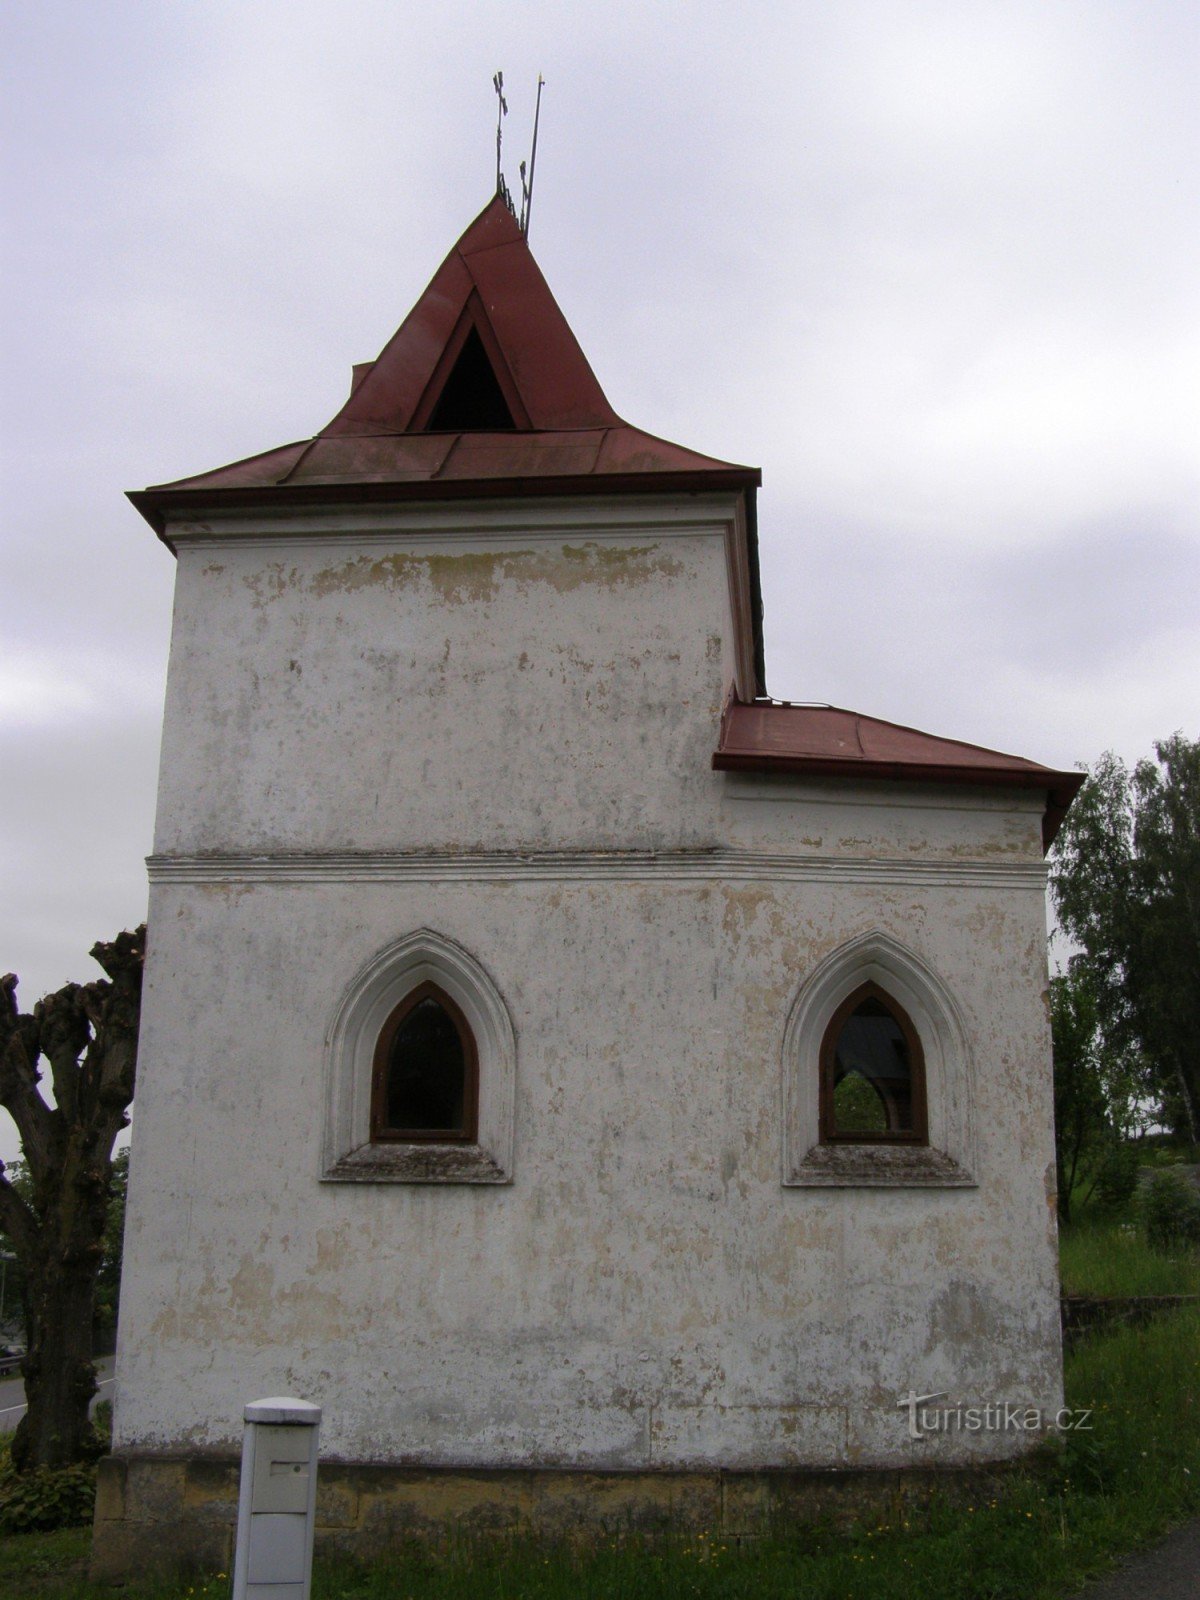 Bradlecká Lhota - Chapel of St. Ludmila